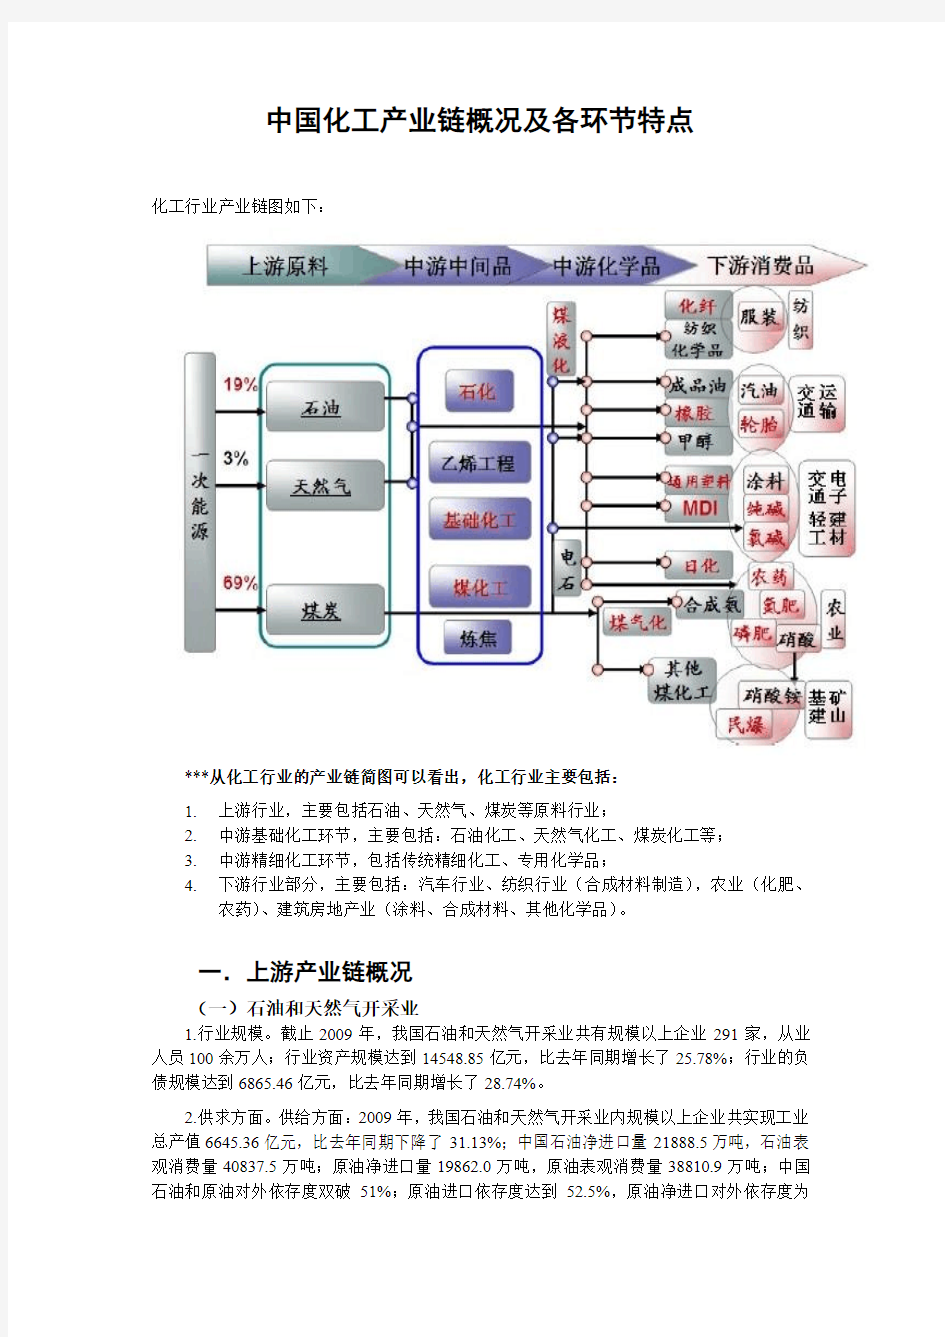 中国化工产业链概况和各环节特点